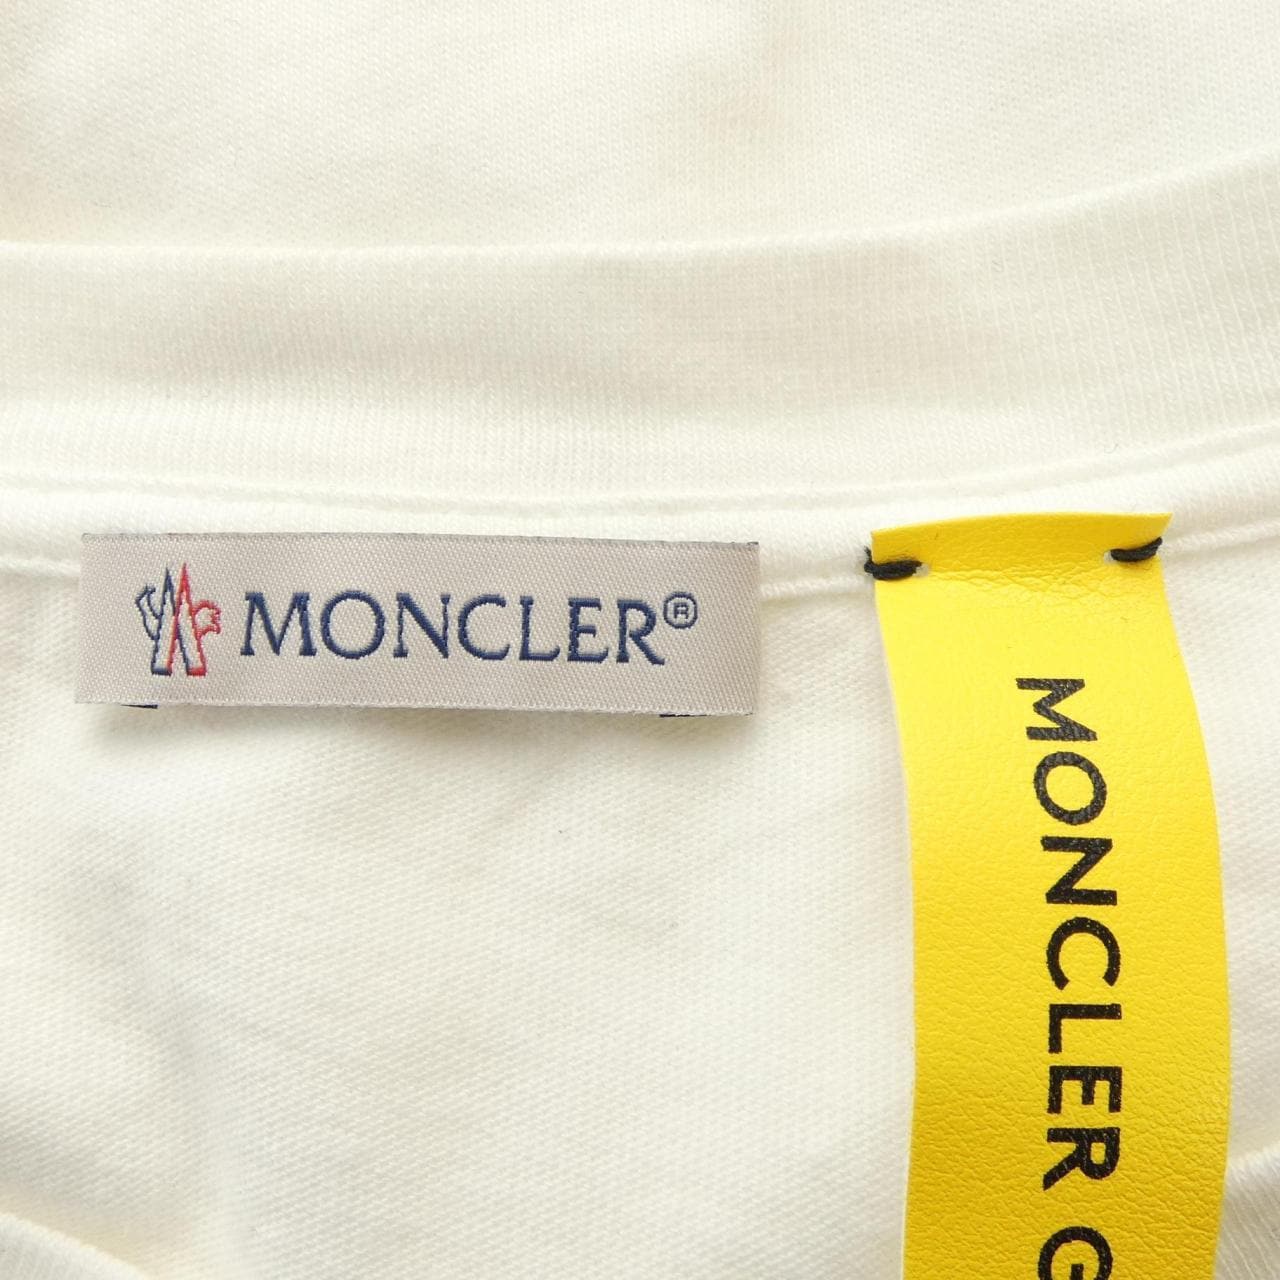 盟MONCLER) Genius 盟可睐 (Moncler) Genius T 恤